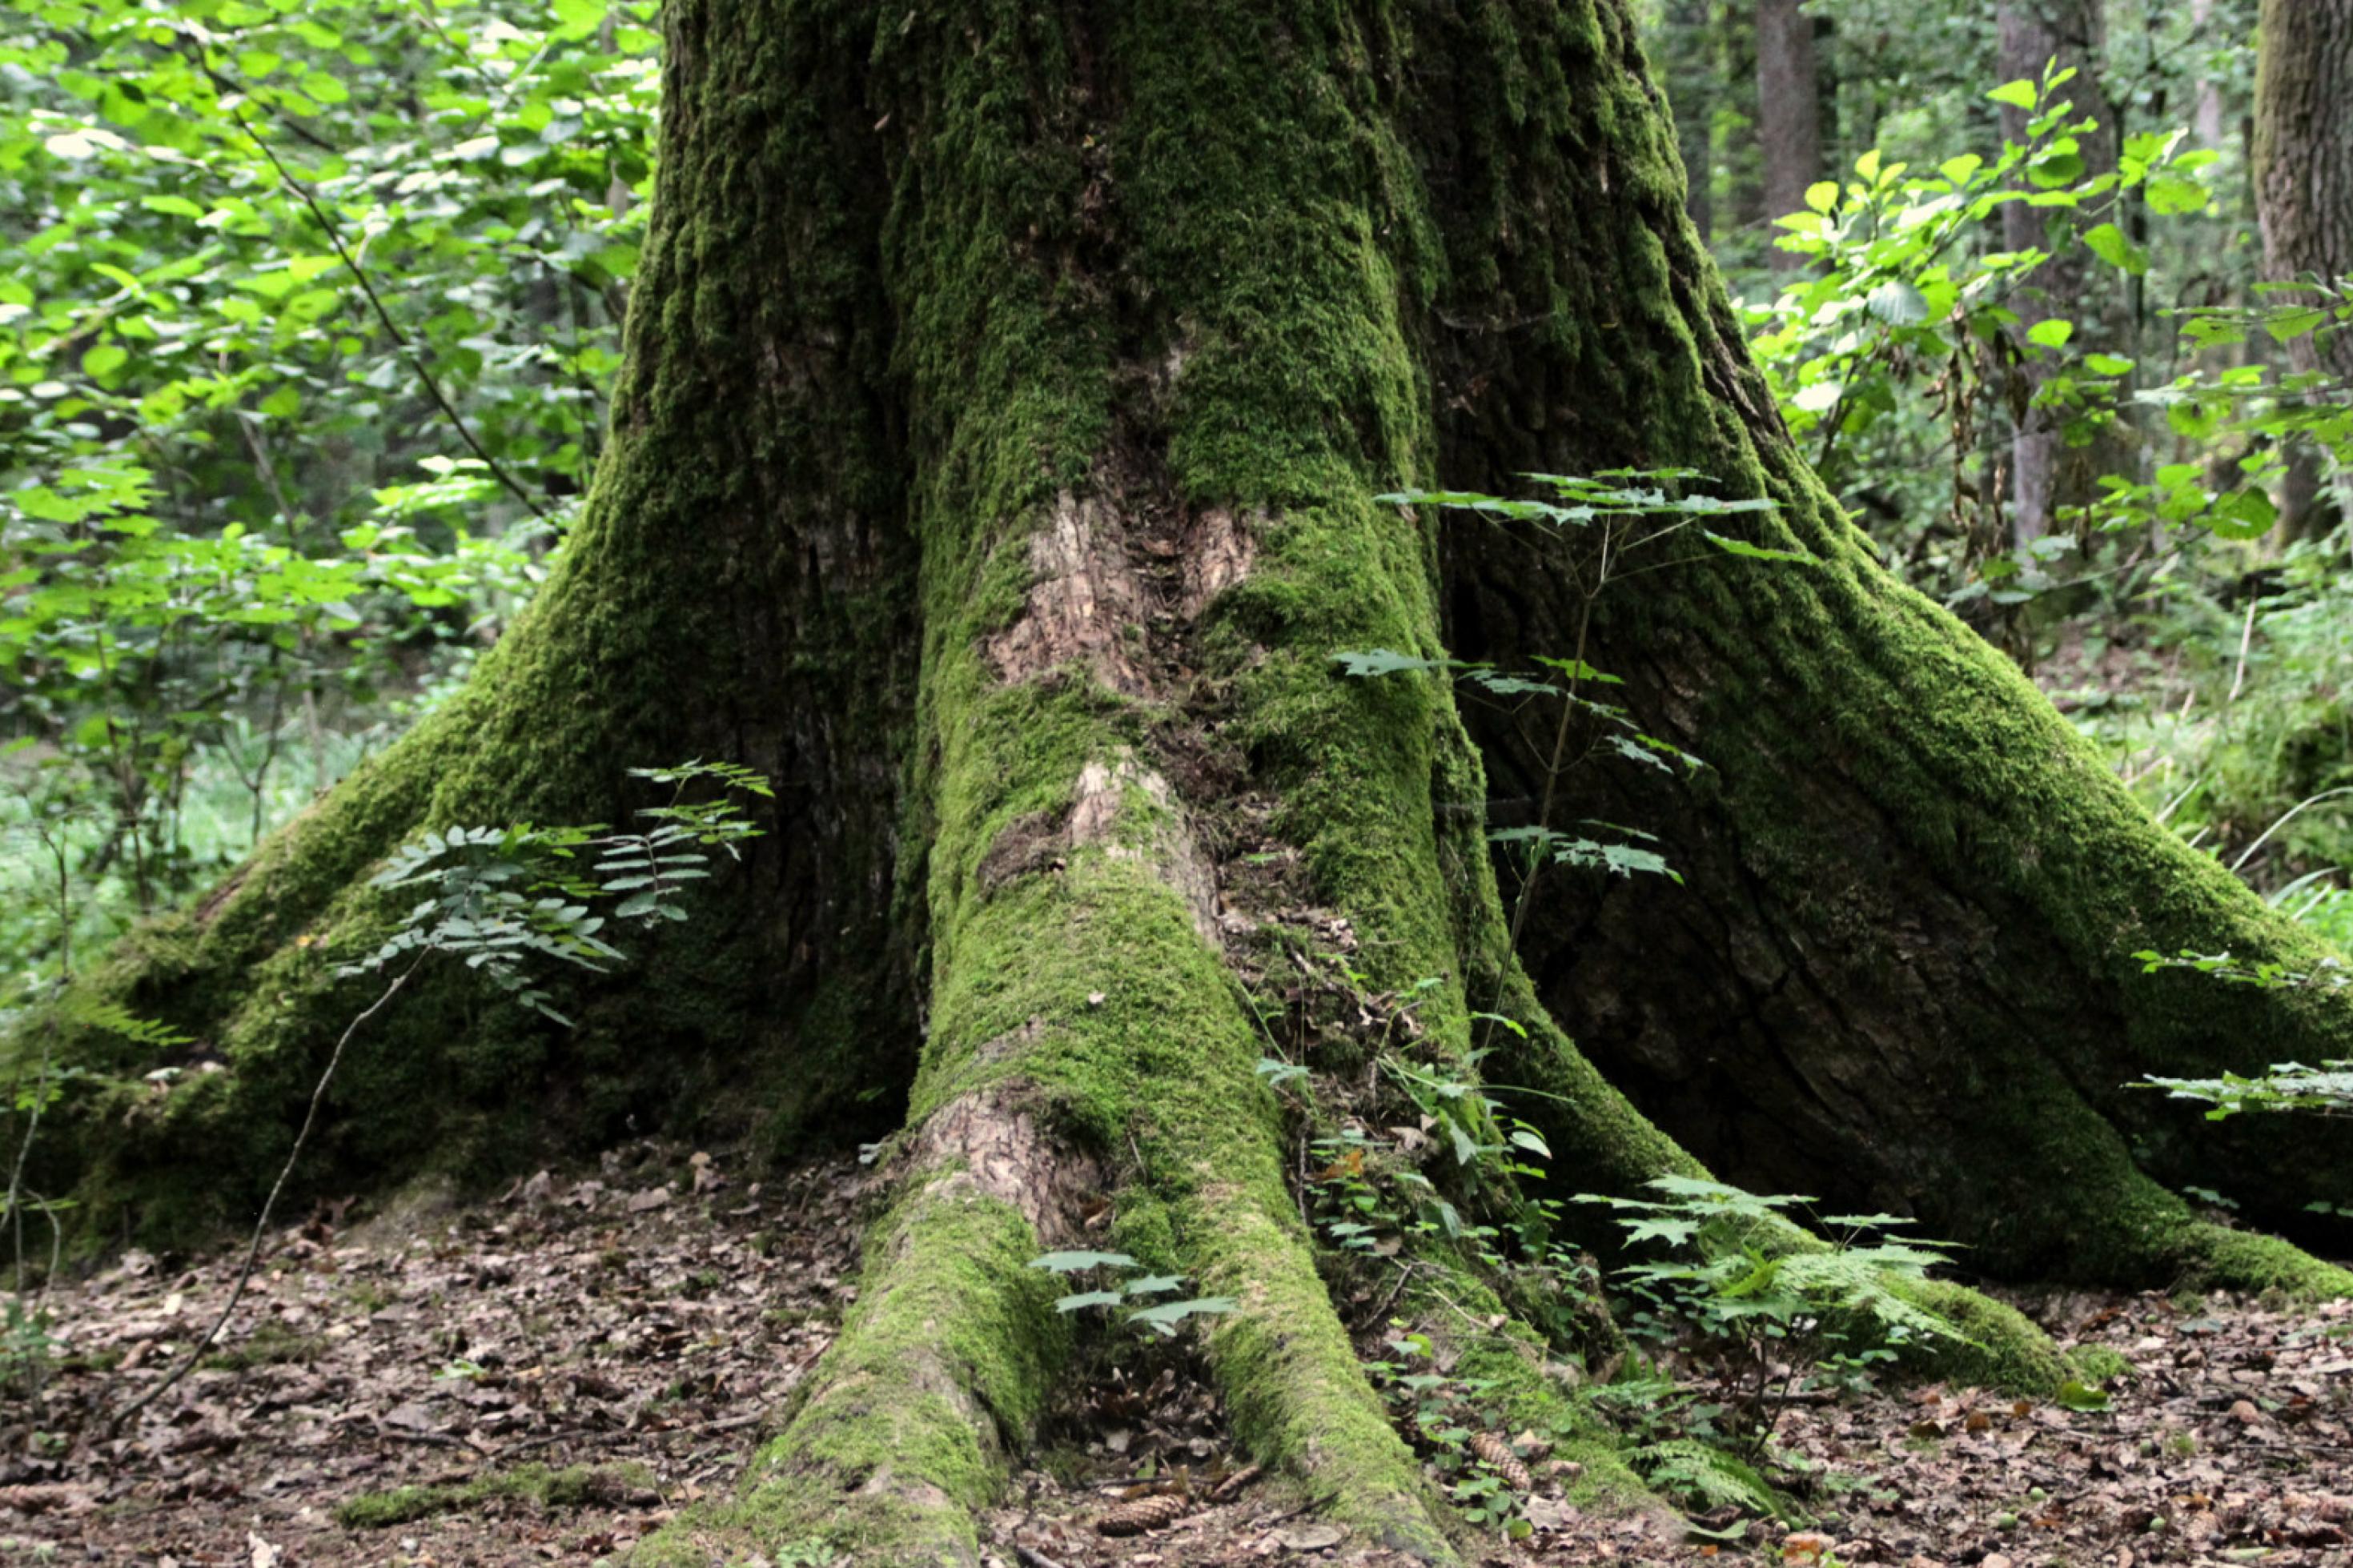 Moosbewachsener Baumstamm im Wald von Białowieża in Polen.